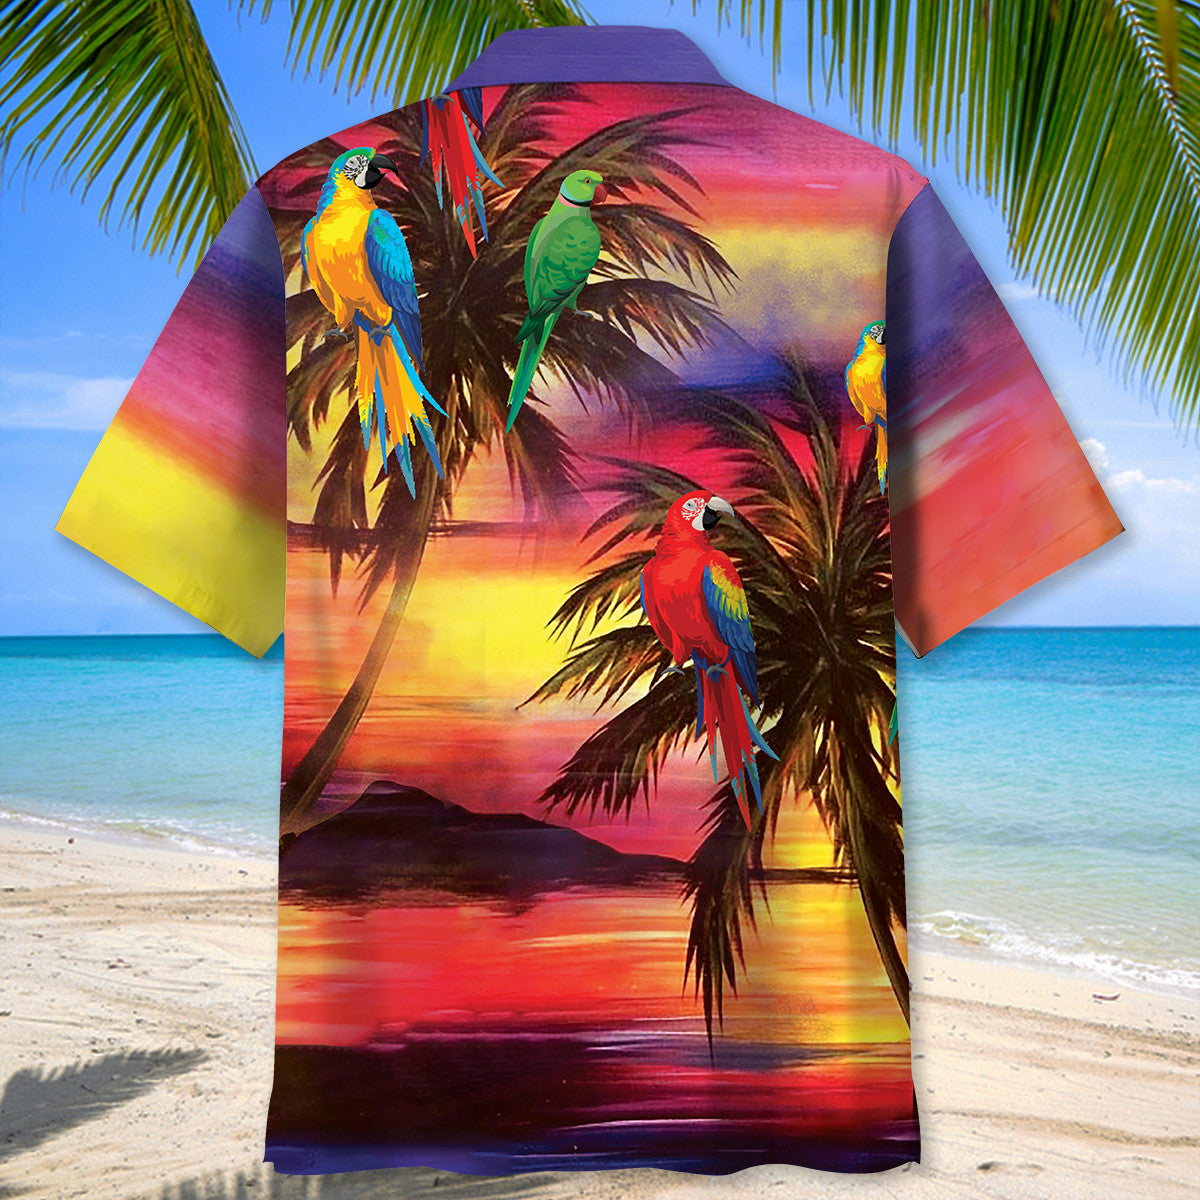 Parrot Sunset Beach Hawaiian Shirt